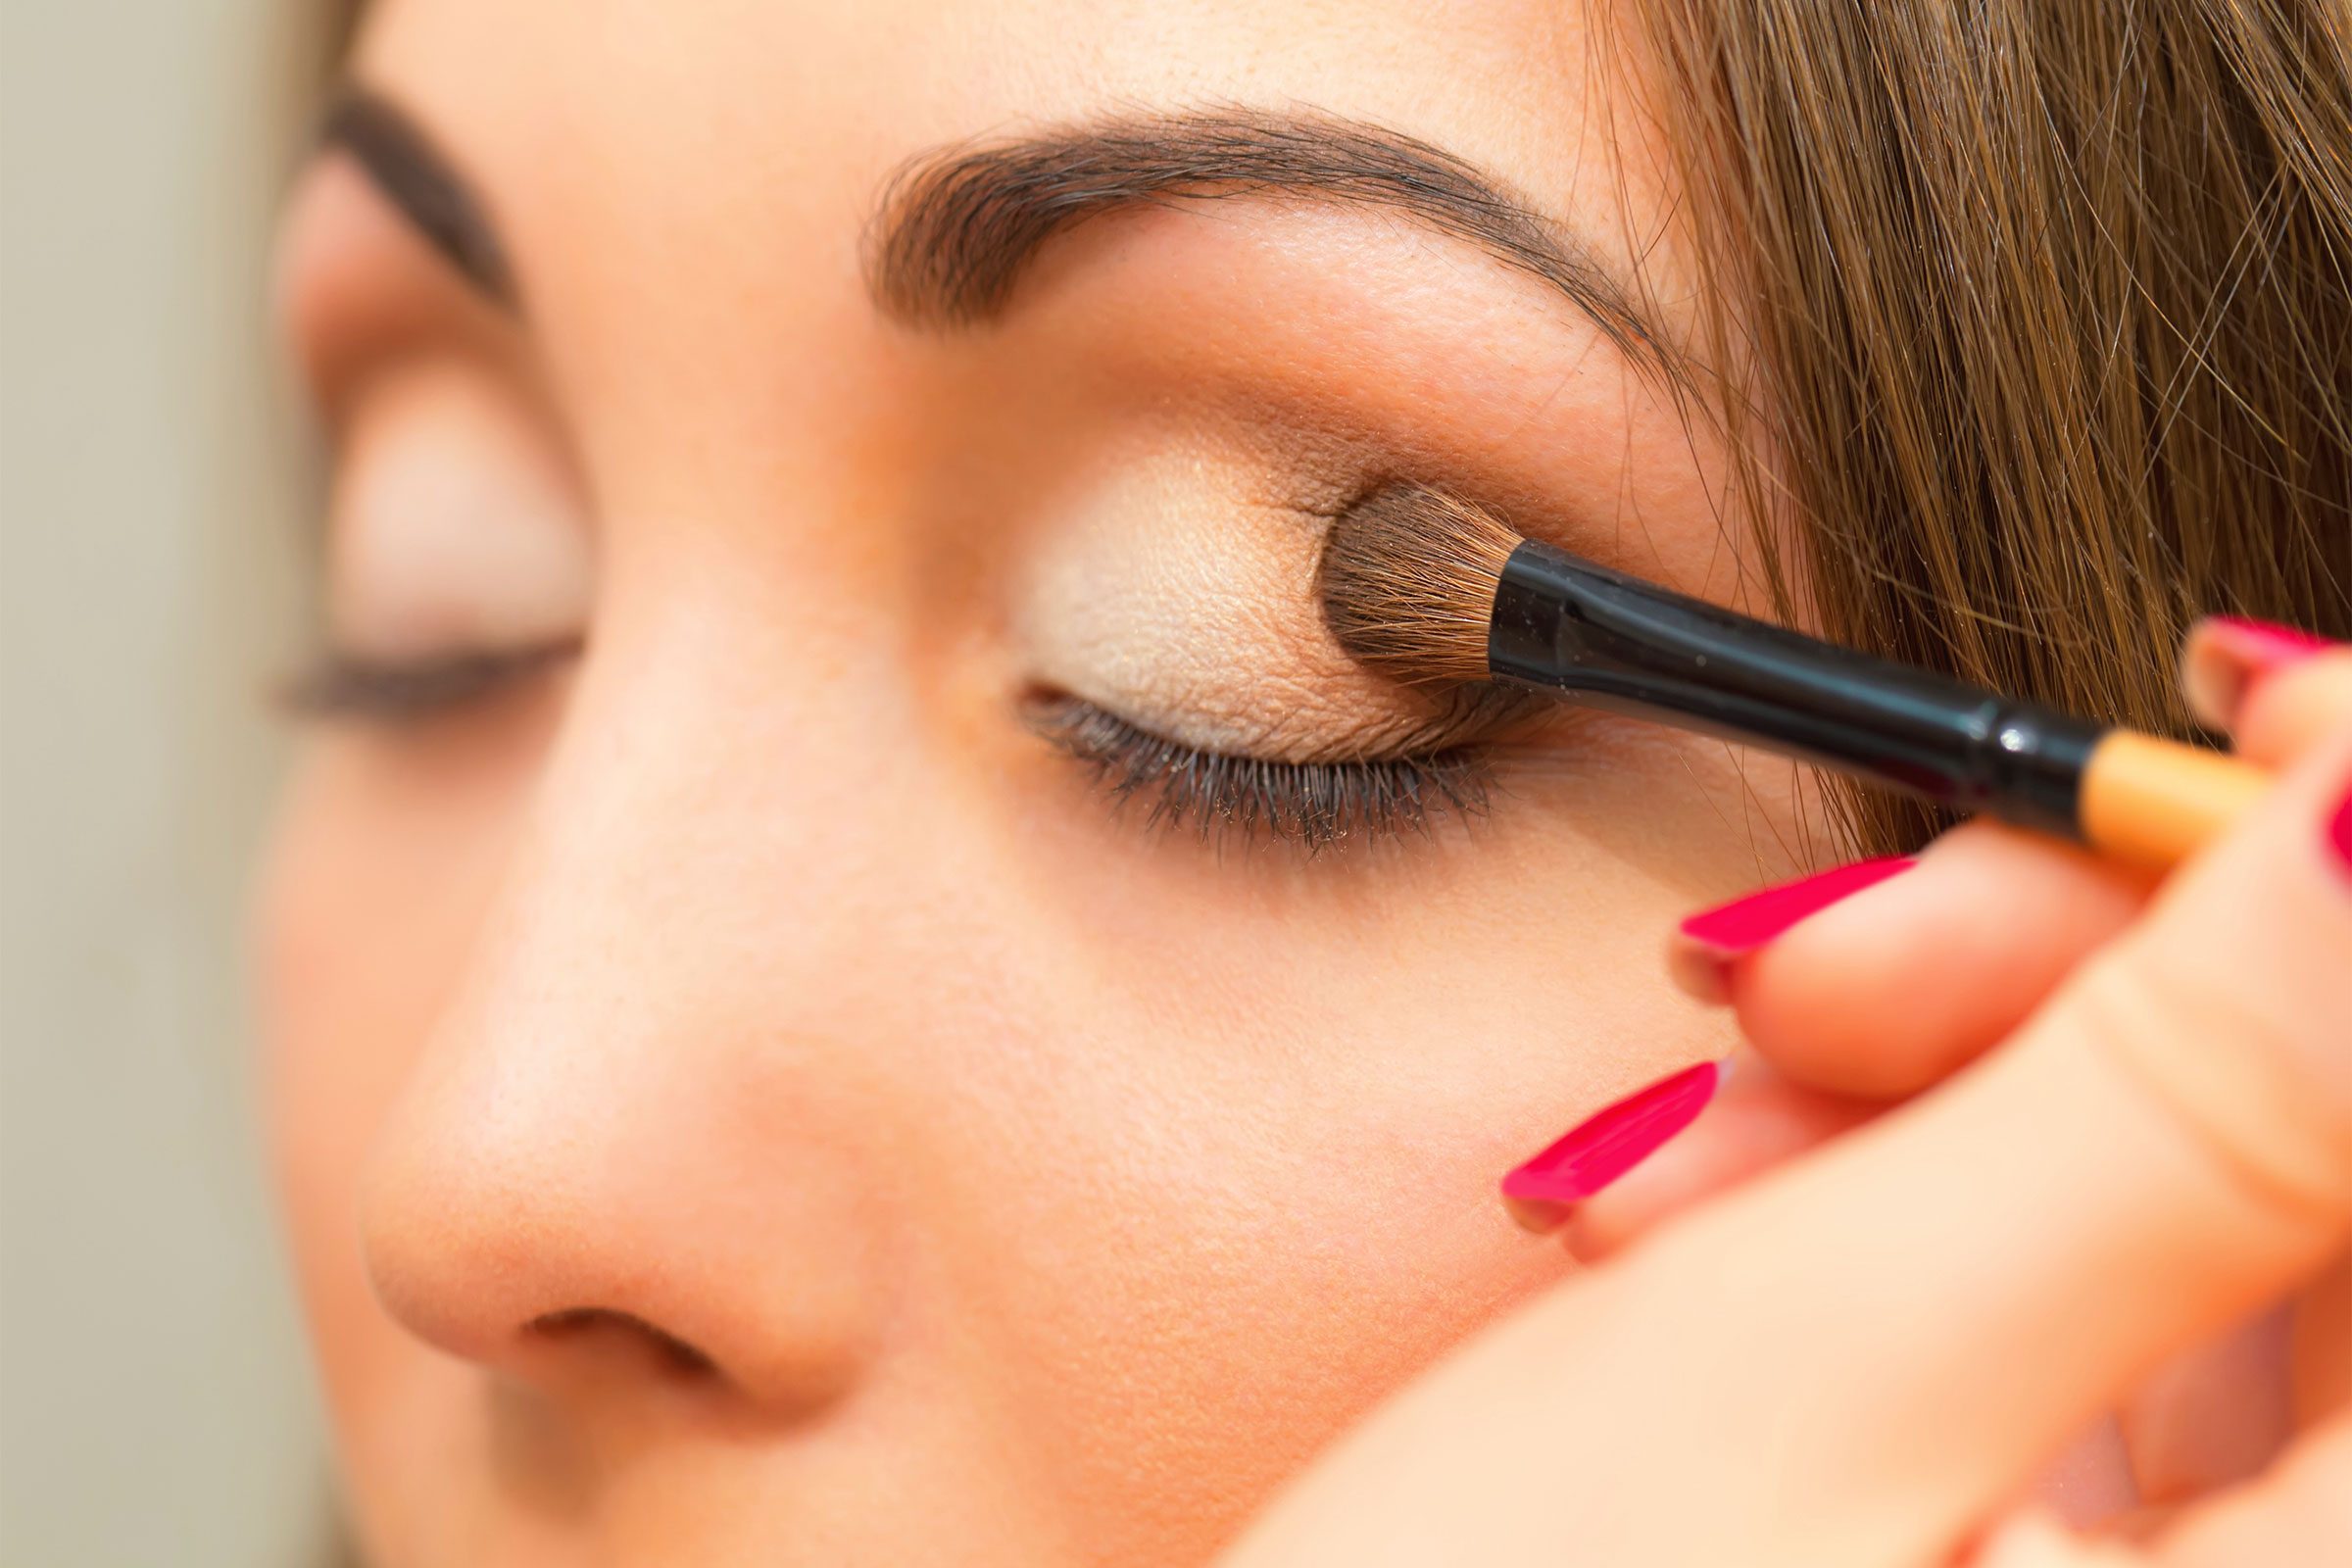 Make Eyes Look Bigger with Makeup | Reader's Digest - Reader's Digest